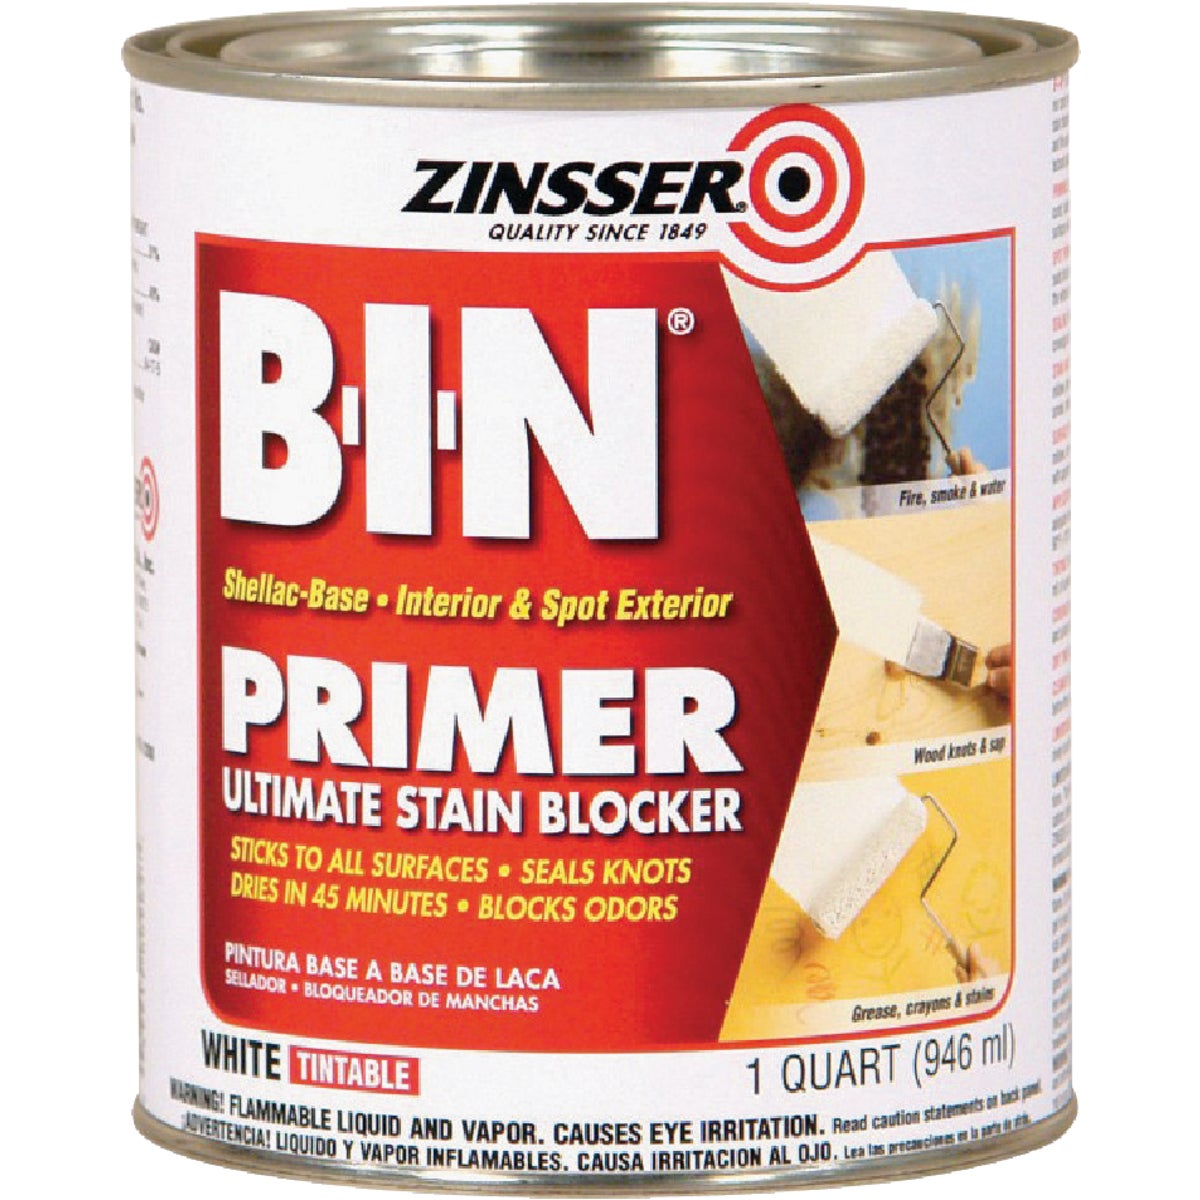 Zinsser B-I-N Shellac-Based Ultimate Stain Blocker Interior & Spot Exterior Primer, White, 1 Qt.